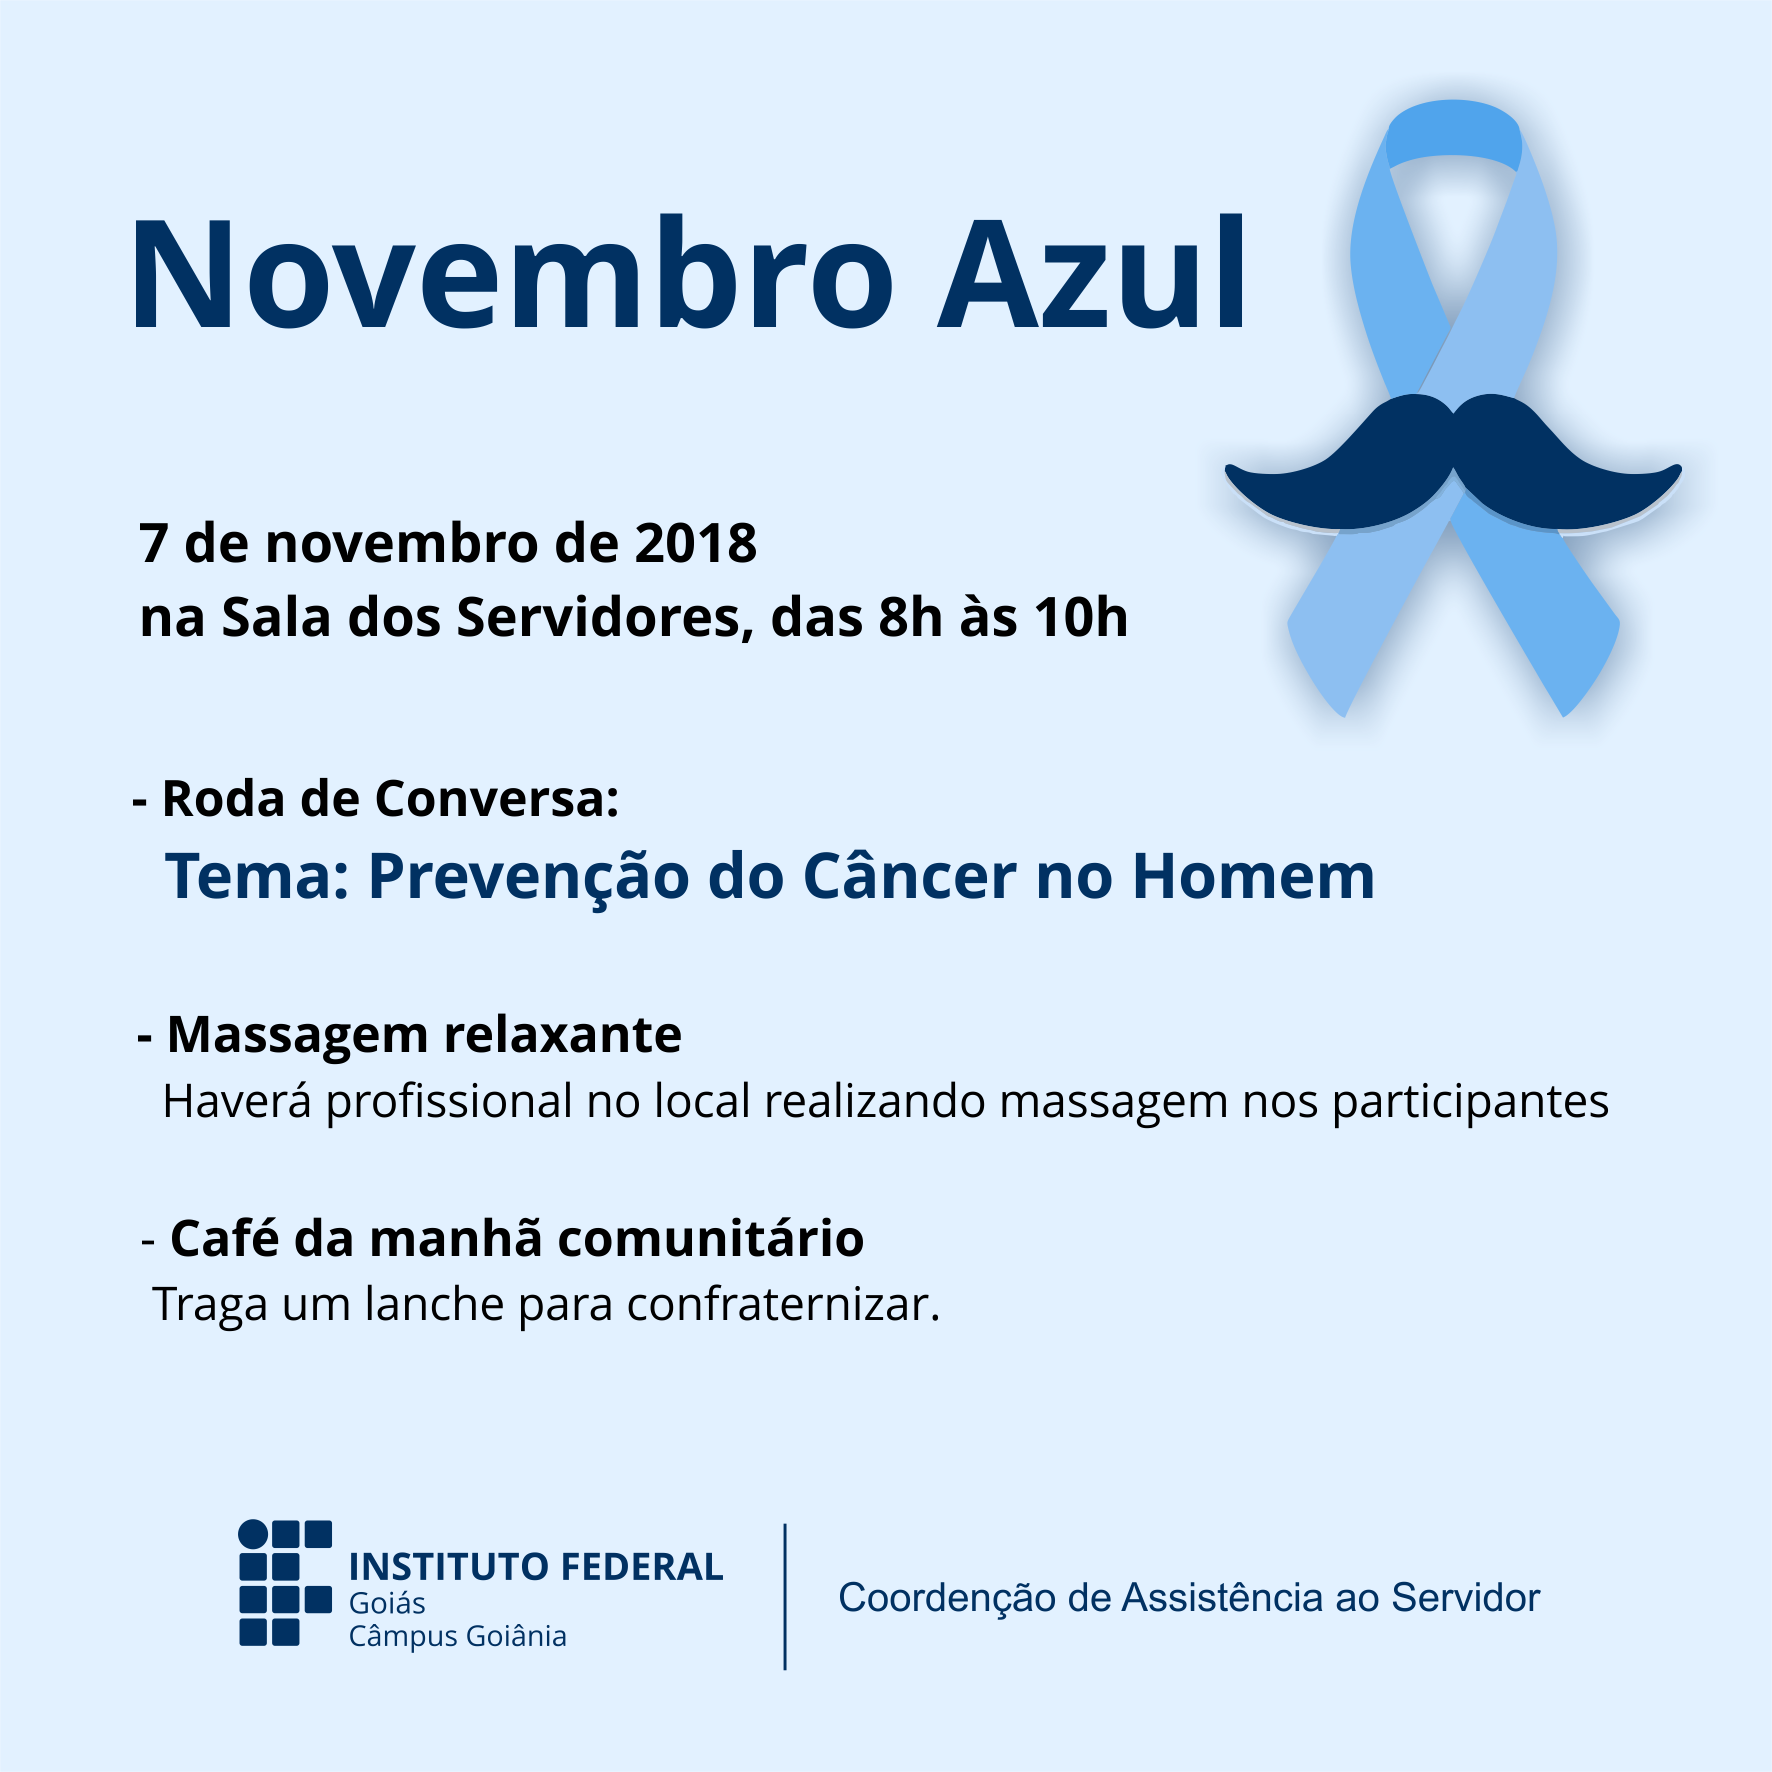 Cartaz da campanha novembro azul no IFG - Câmpus Goiânia